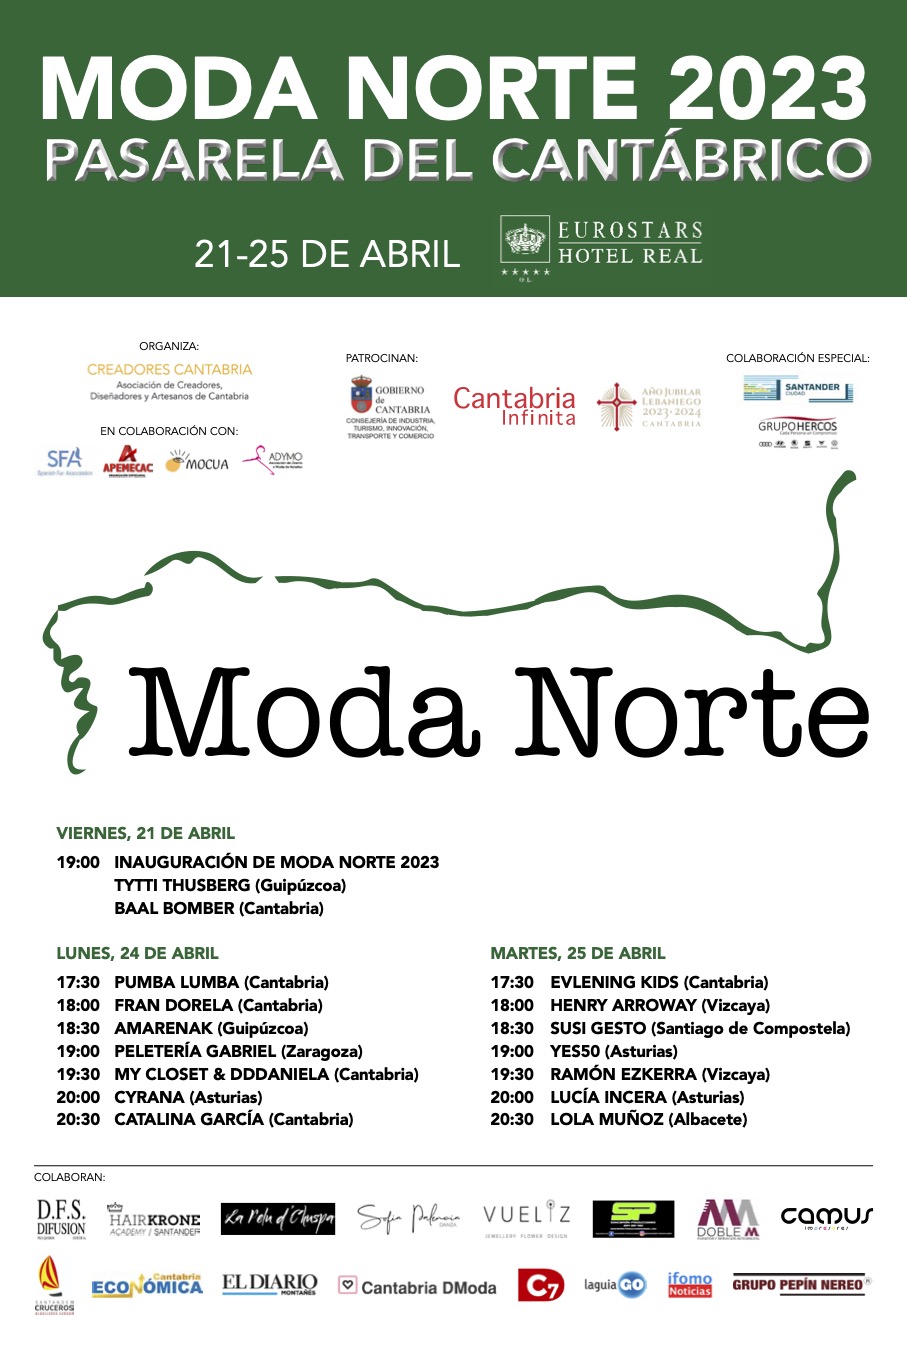 Moda Norte 2023 se celebrará del 21 al 25 de abril en el Hotel Real de Santander